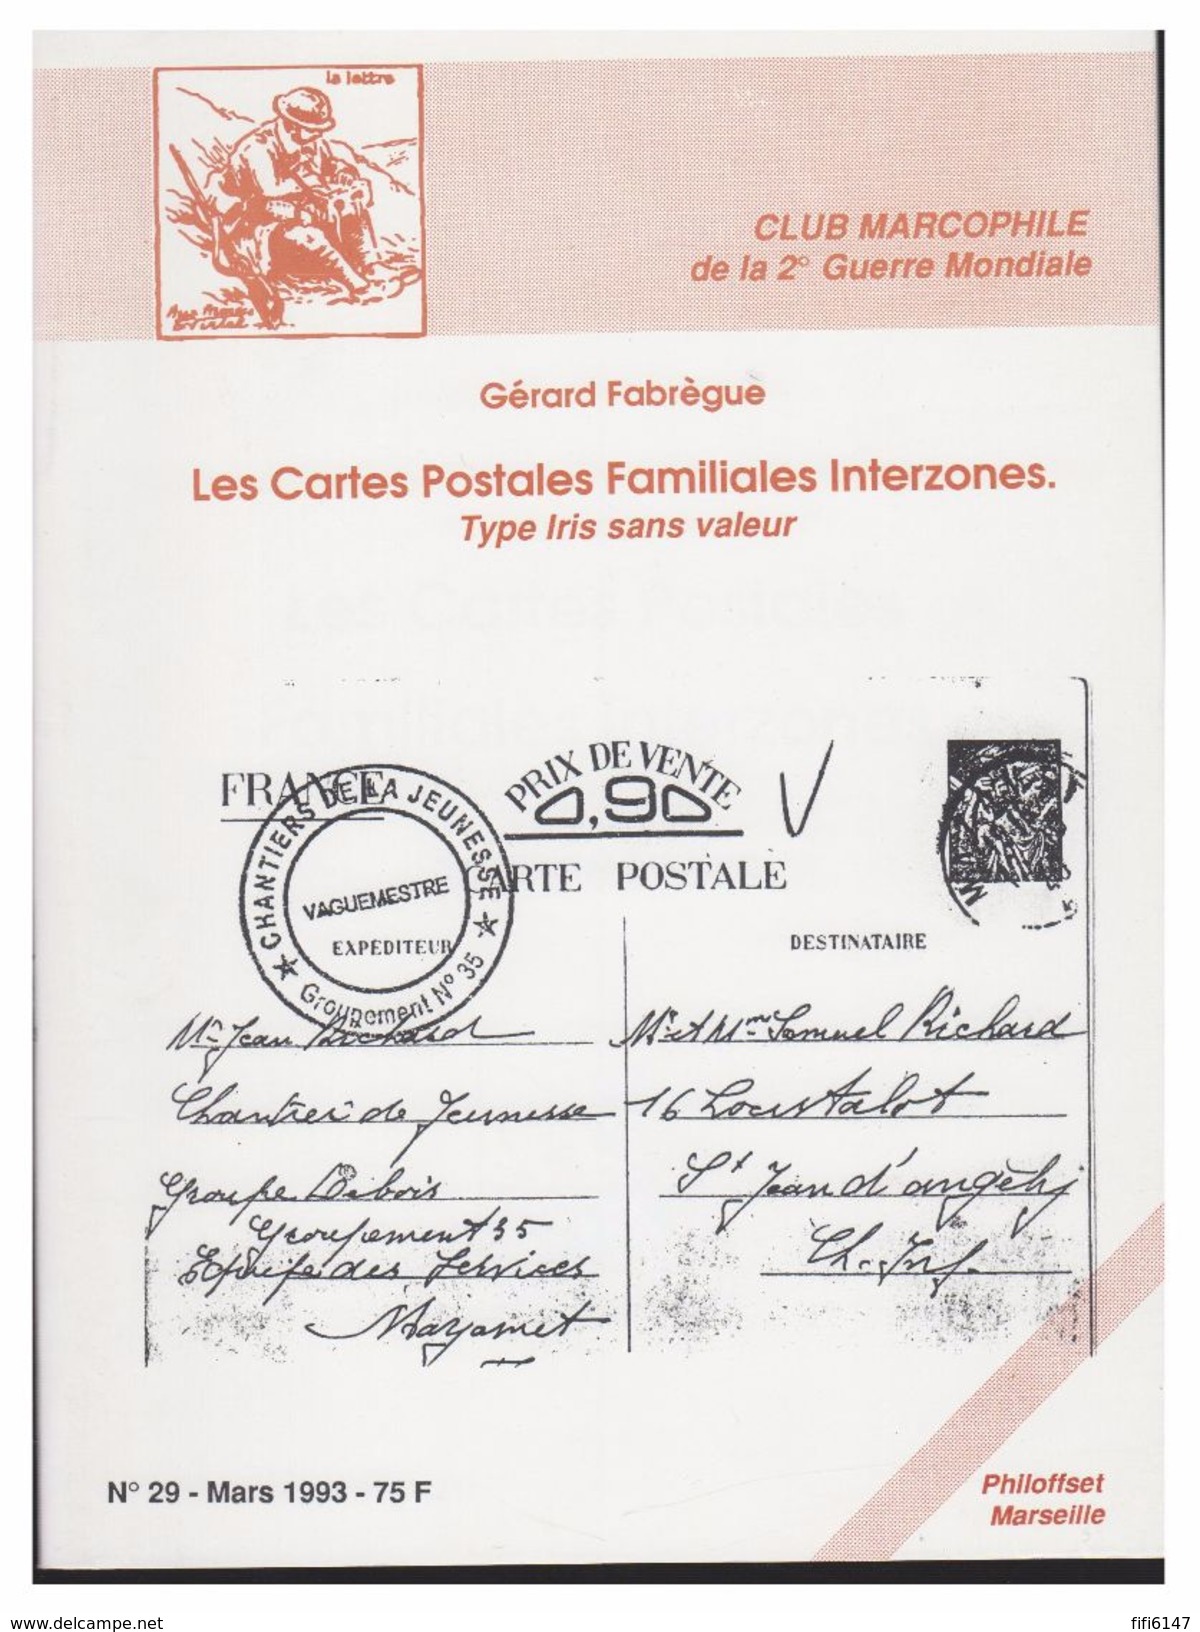 FRANCE -- SECONDE GUERRE MONDIALE -- GERARD FABREGUE -- LES CARTES POSTALES FAMILIALES INTERZONES -- 1993 - Philatélie Et Histoire Postale